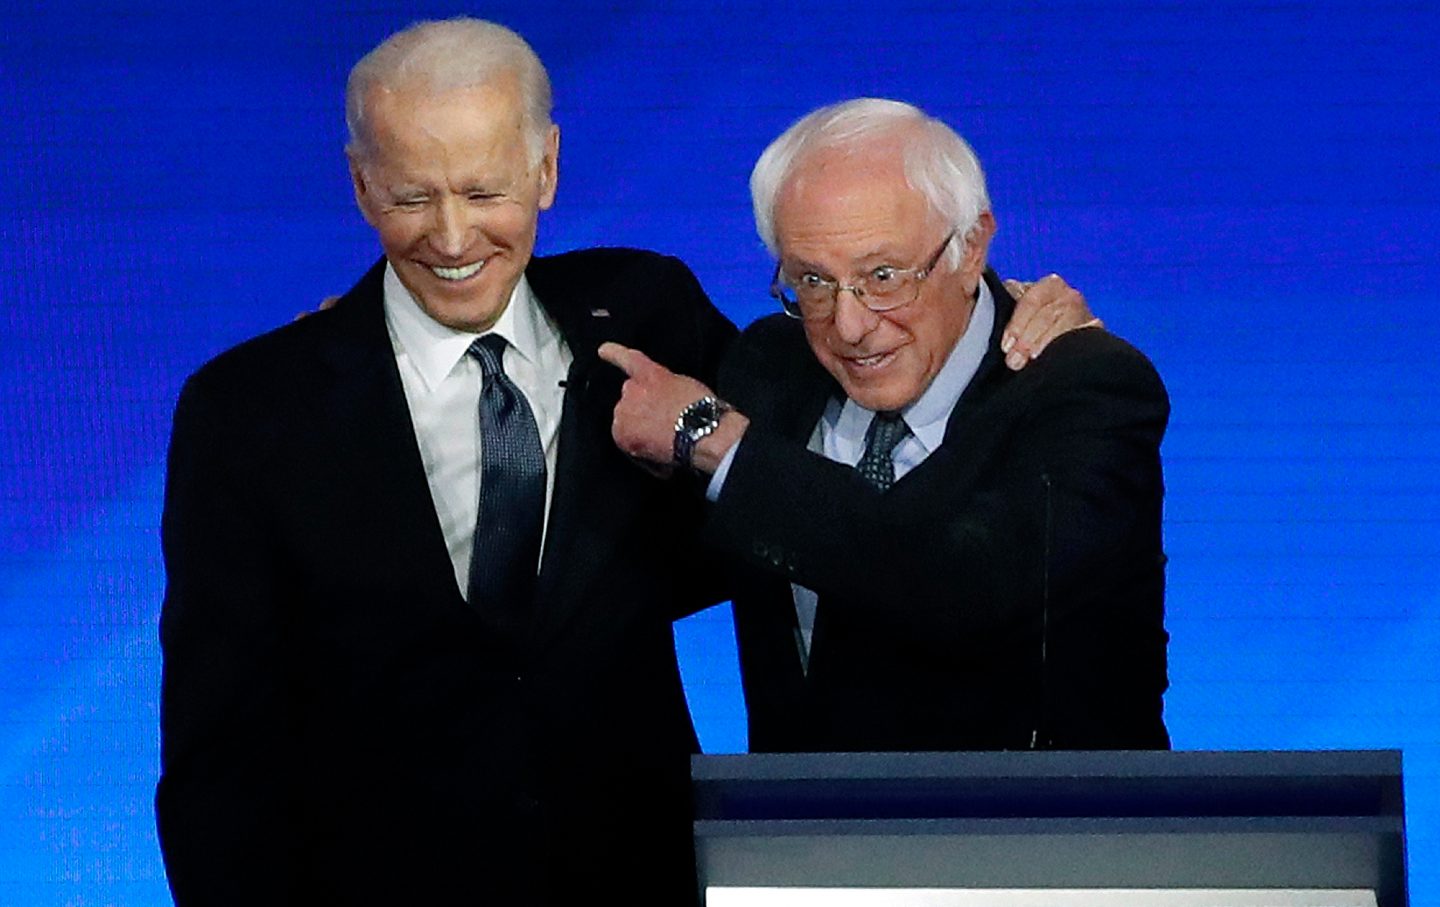 President Joe Biden and Senator Bernie Sanders during a 2020 presidential primary debate.